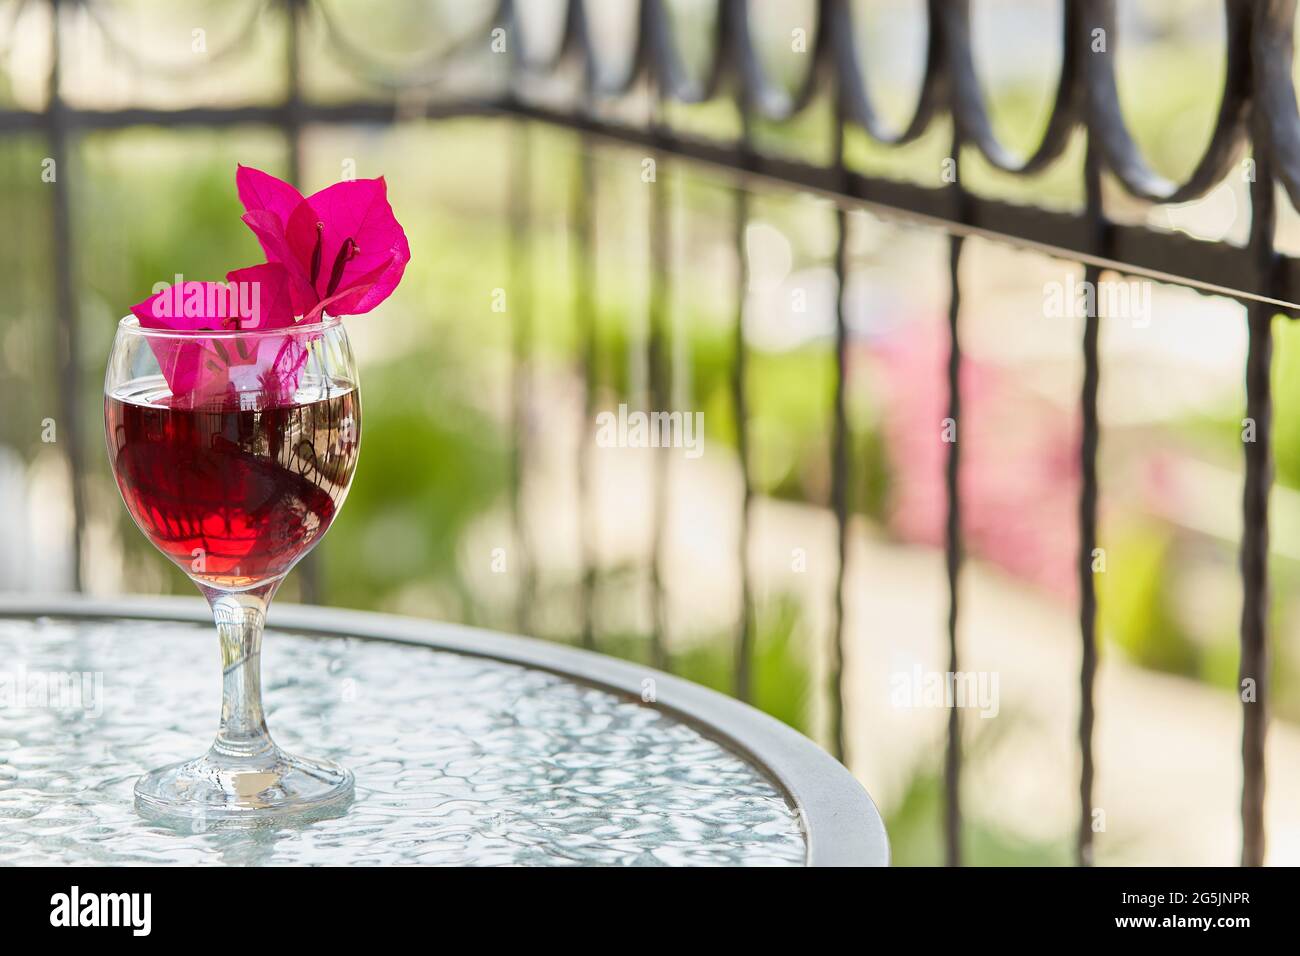 Romantischer Blick auf die Terrasse: Elegantes Glas Rotwein und dekorative rosa Blumen von Bougainvillea in einem Glas. Festliches Weihnachtskonzept. Speicherplatz kopieren. Stockfoto